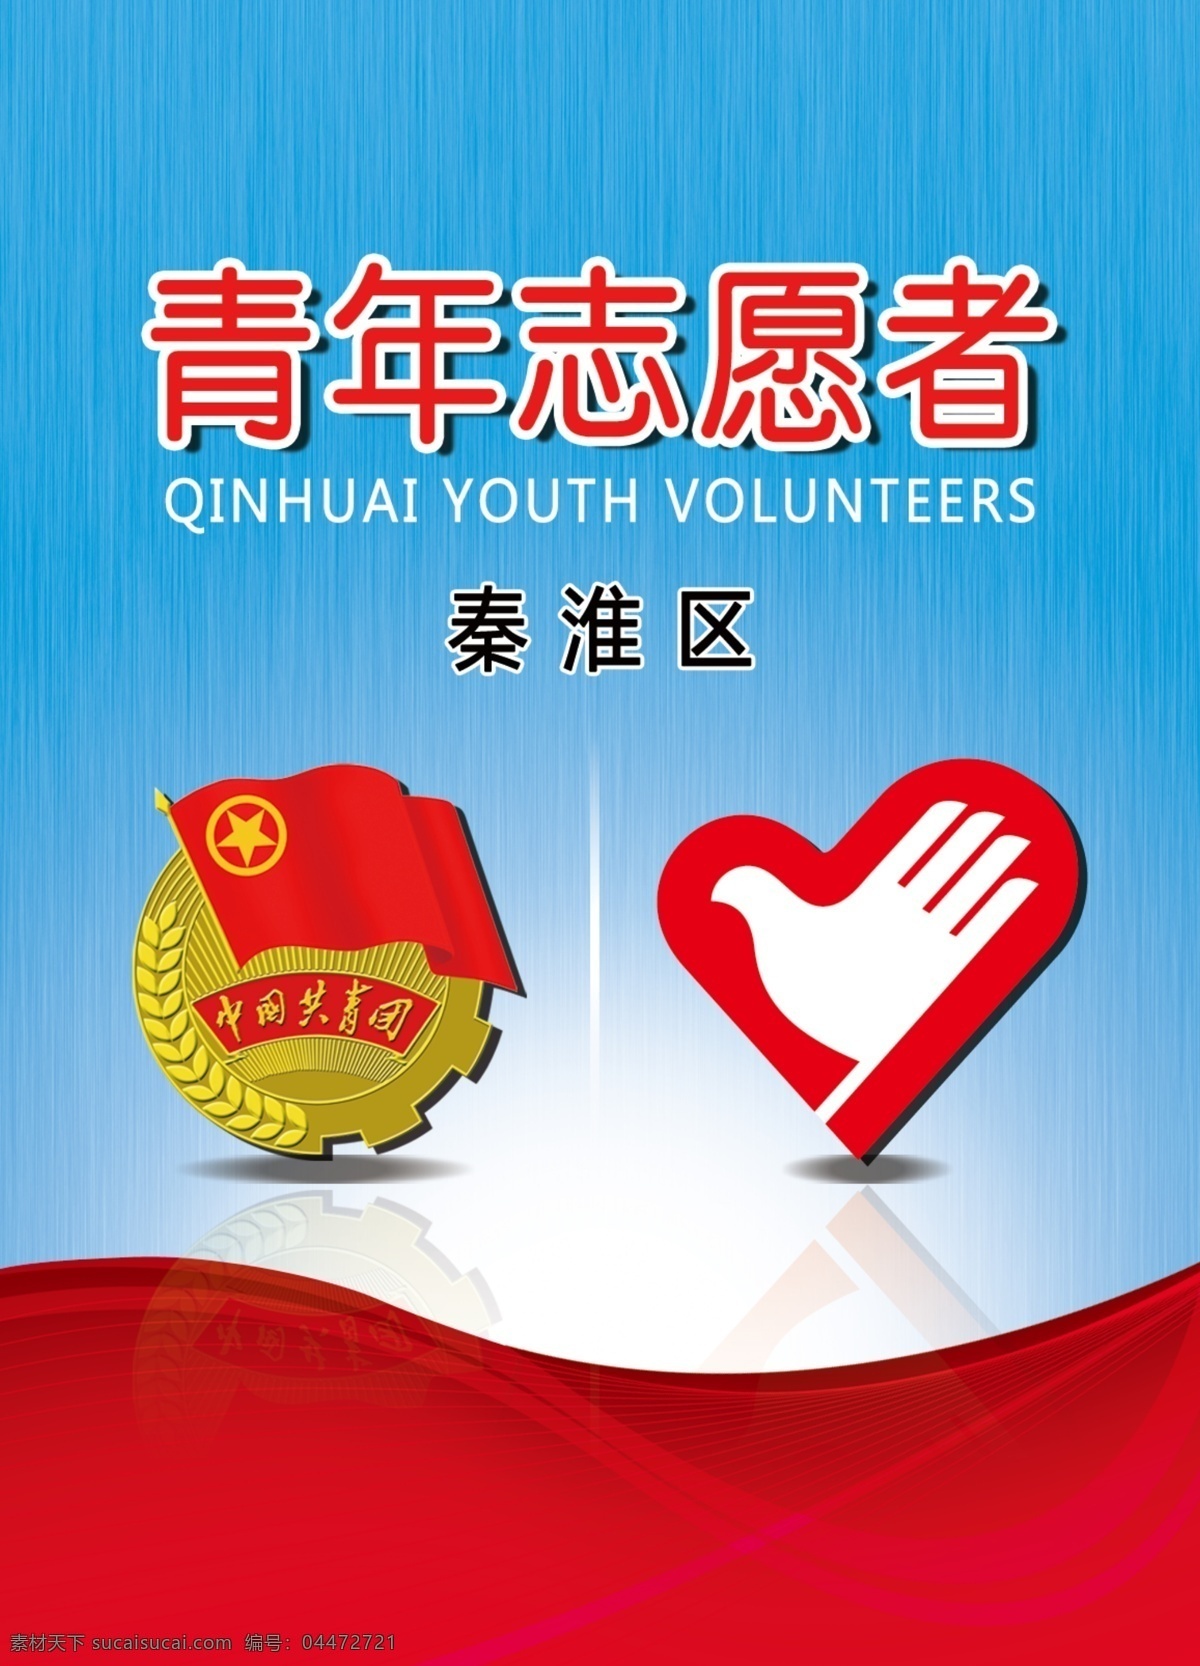 胸卡卡片 胸卡 胸牌 中国共青团 志愿者 青年志愿者 工作证 记者证 工作人员证 名片卡片 广告设计模板 源文件